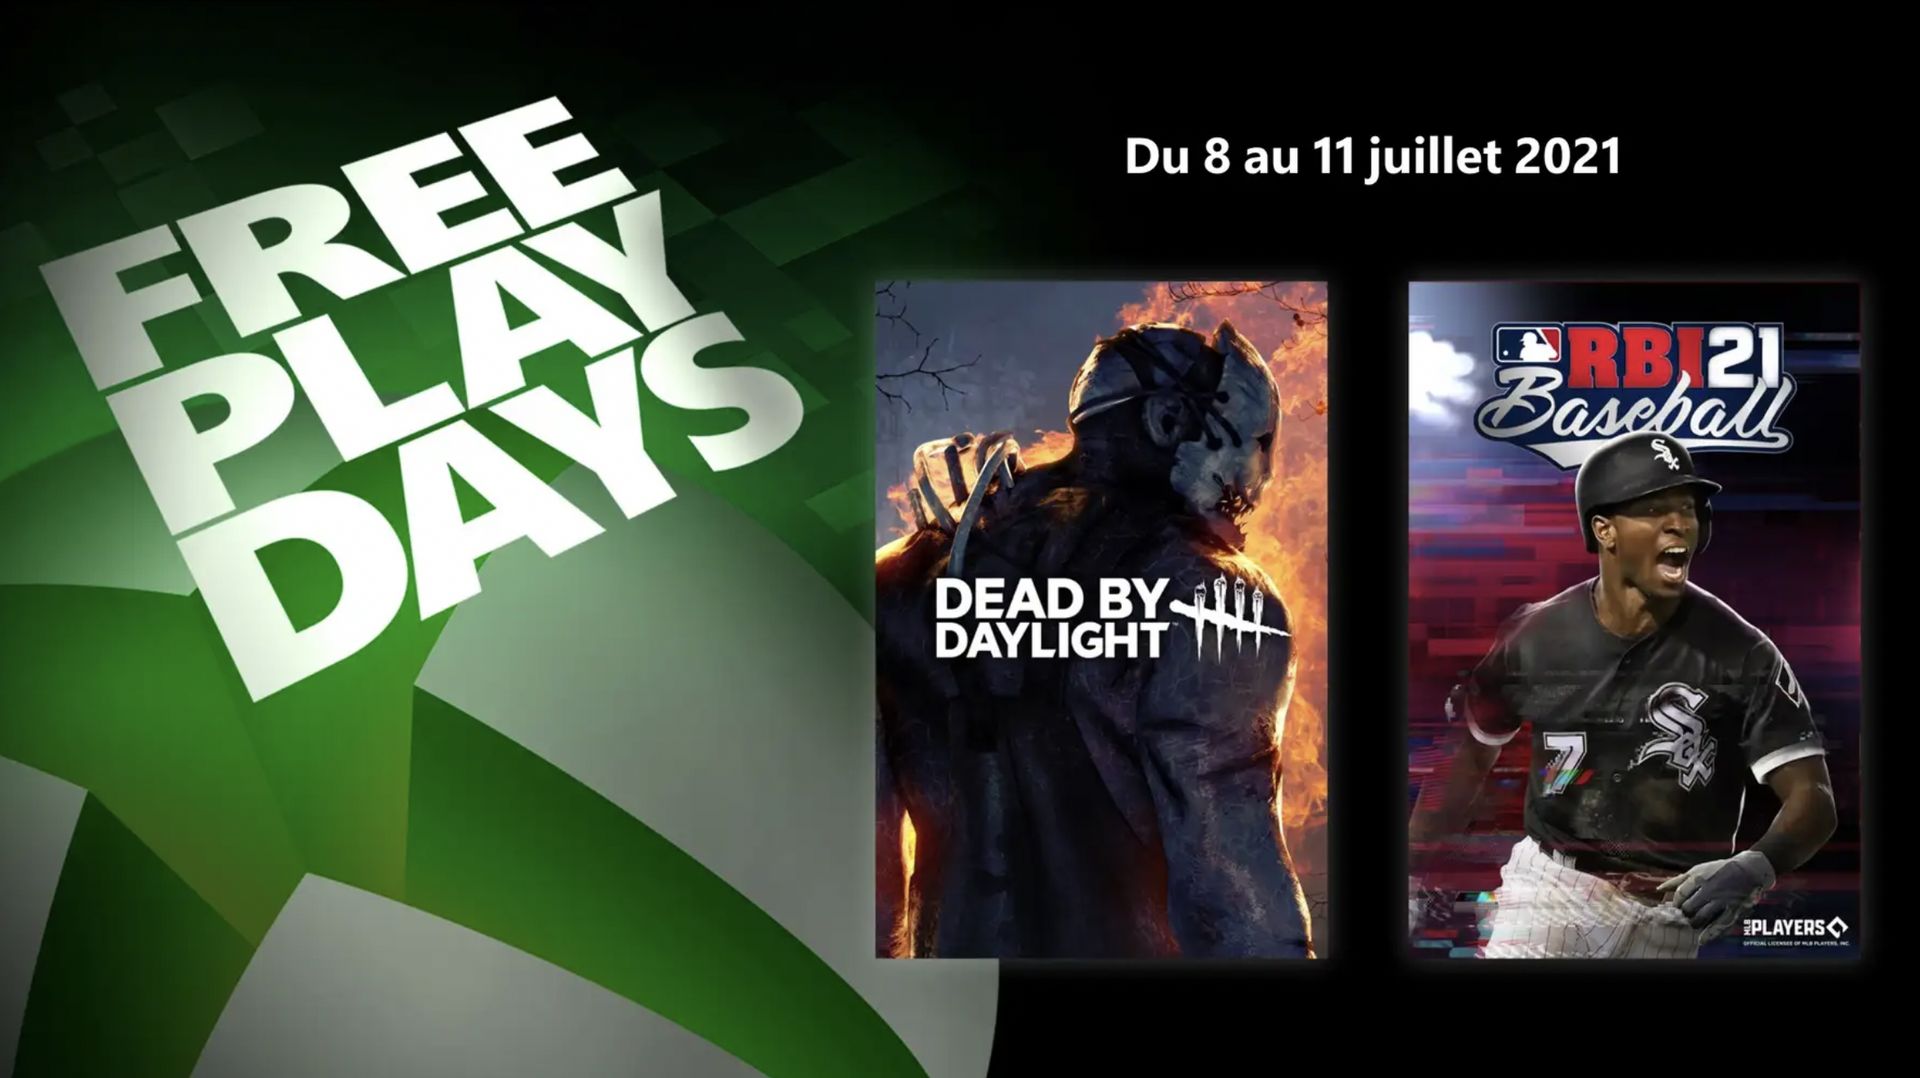 Free Play Days : Microsoft propose deux nouveaux jeux à découvrir gratuitement ce week-end